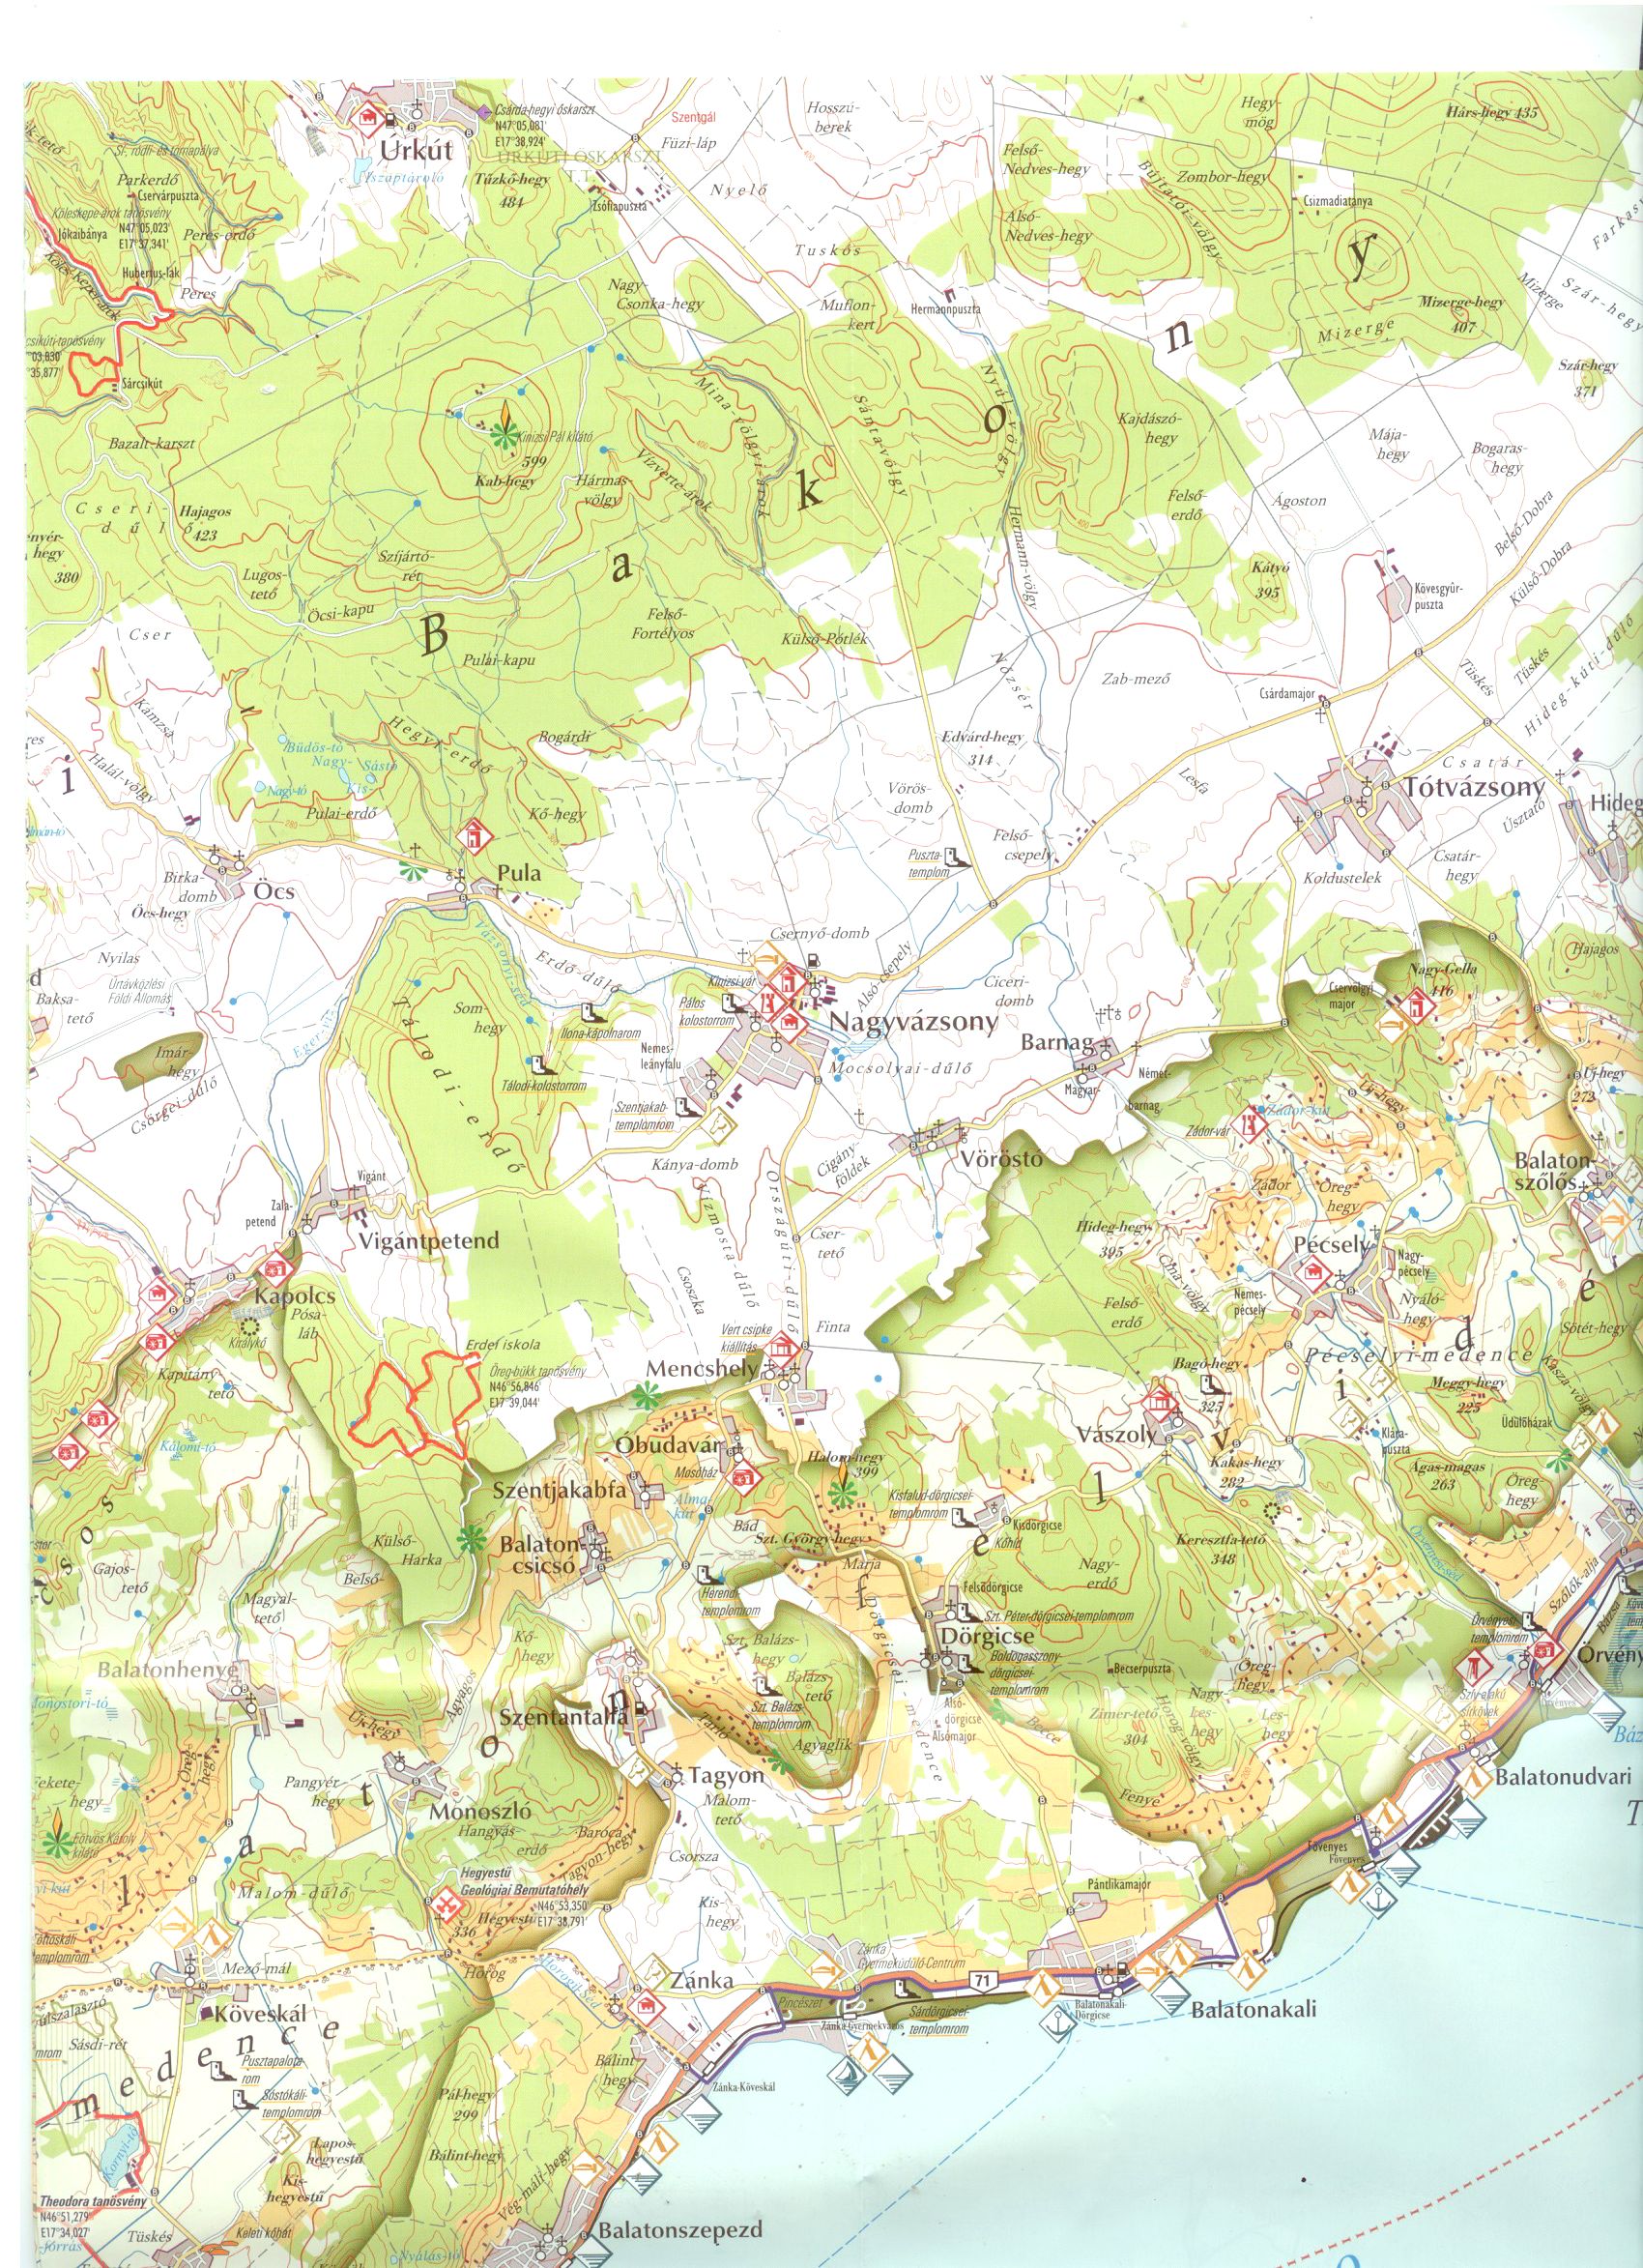 Balaton Uplnads NP sample map